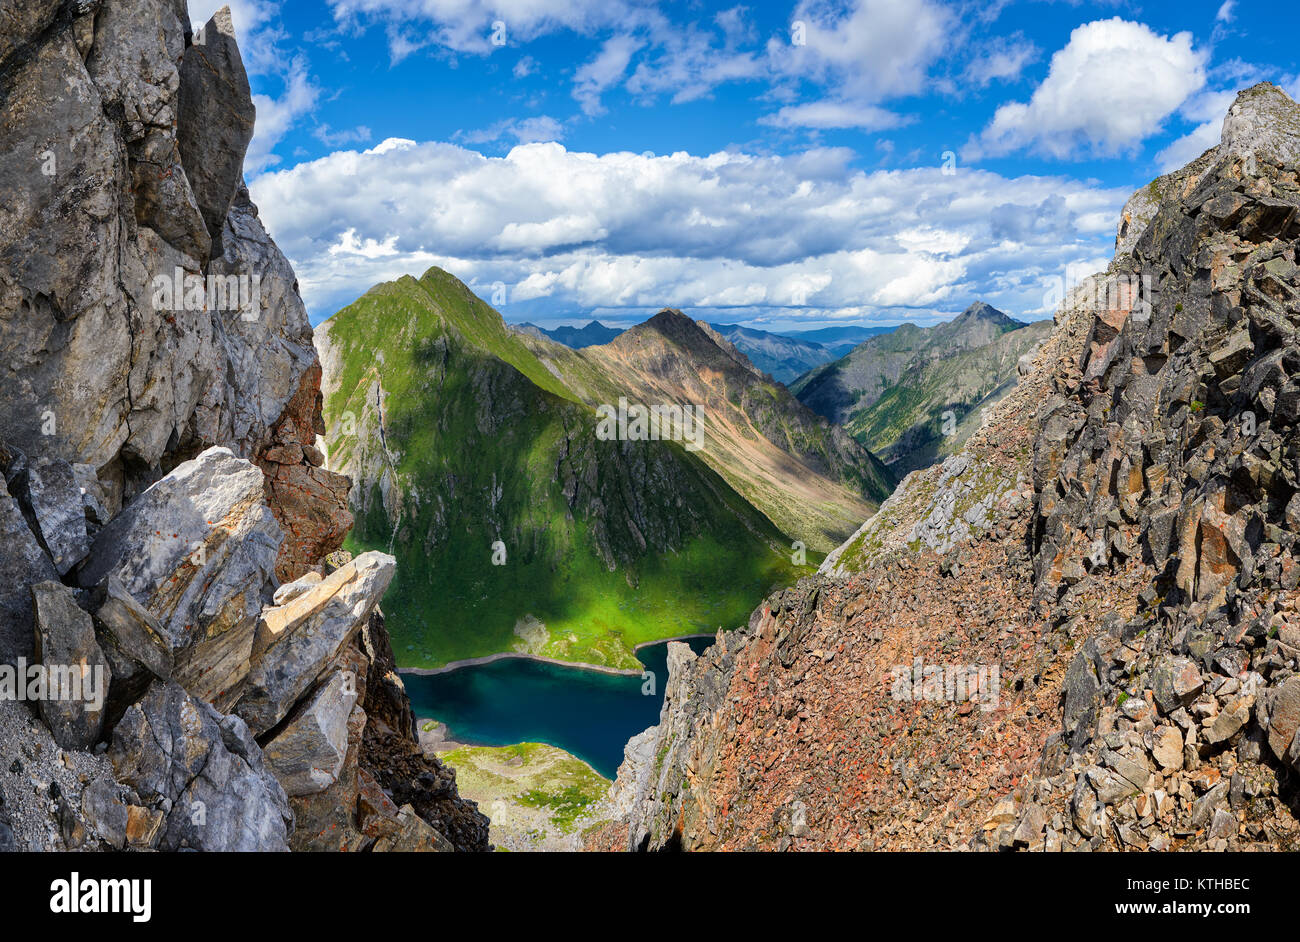 Escursionismo. Pass 'Mountain turisti' sulla cresta spartiacque Tunka. Vista attraverso uno stretto passaggio a valle con un lago. Siberia orientale Foto Stock